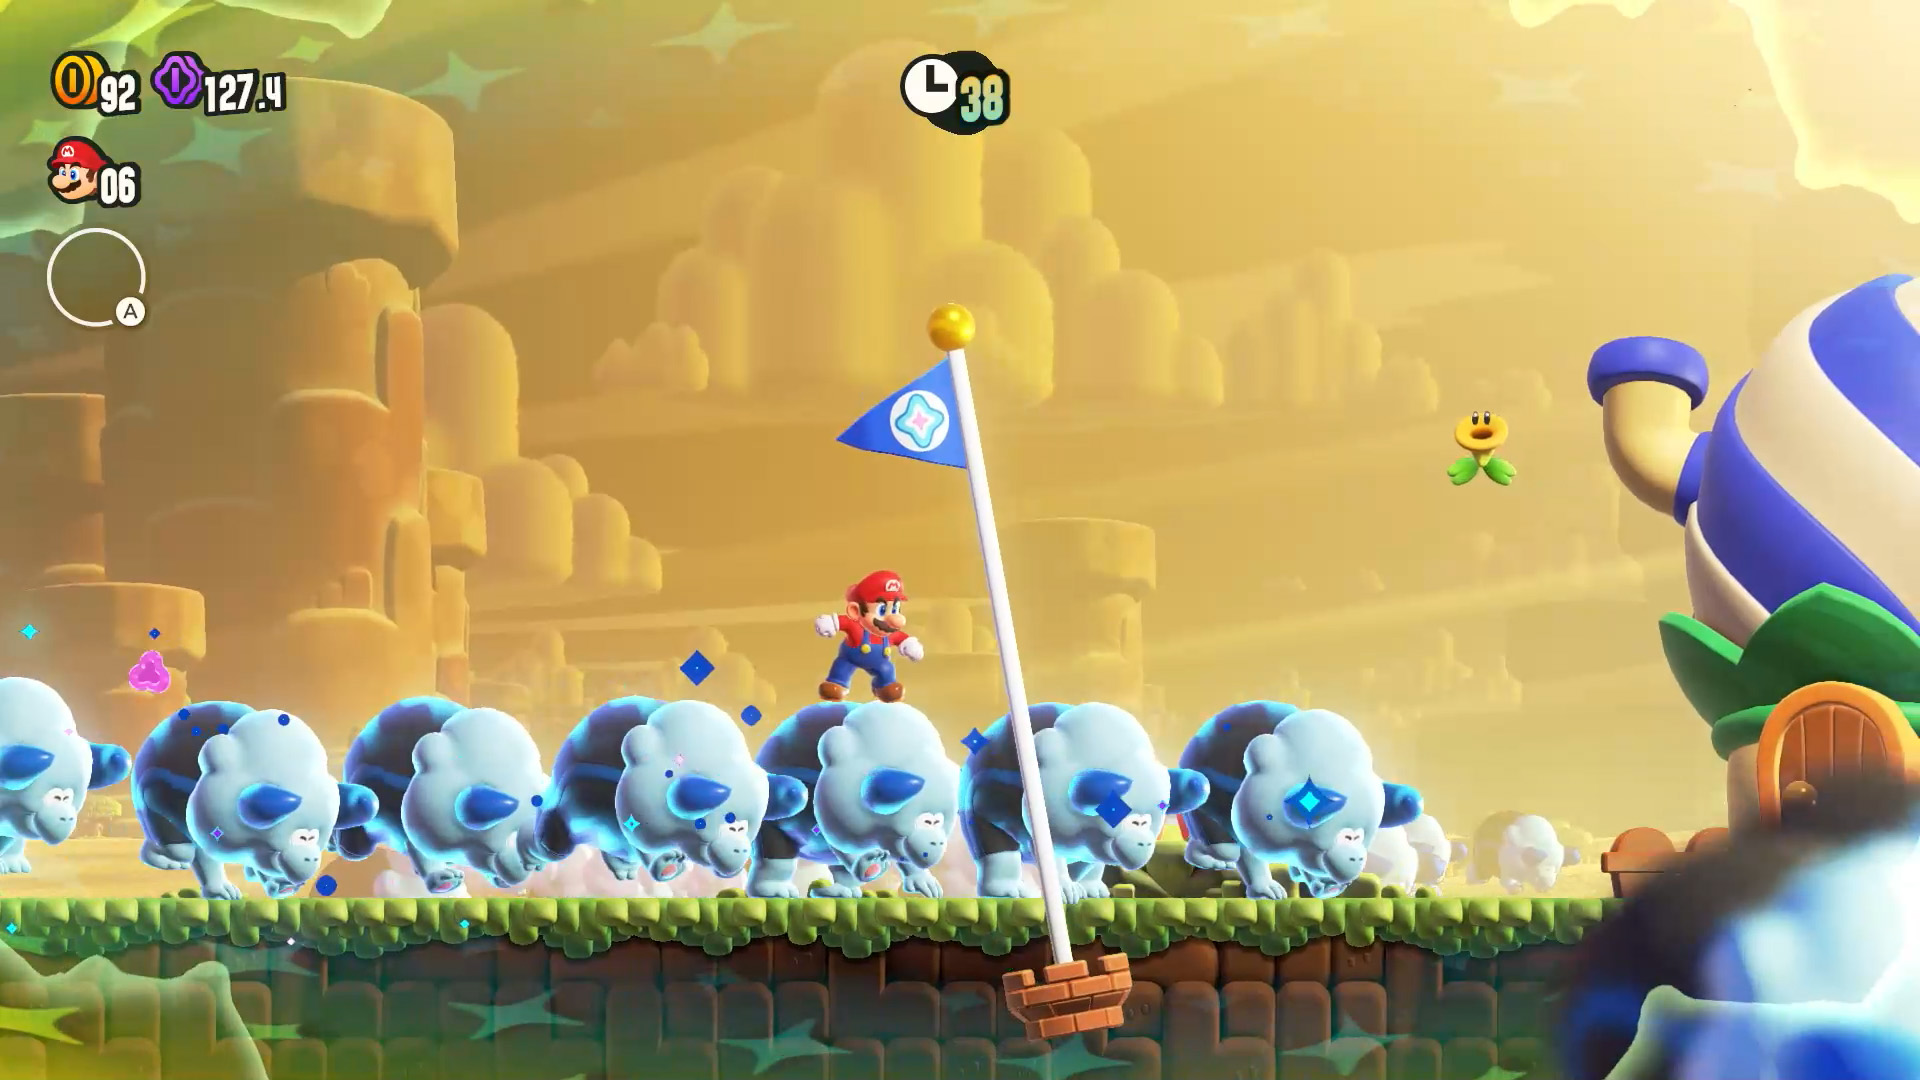 Super Mario Bros. Wonder, Jogos para a Nintendo Switch, Jogos